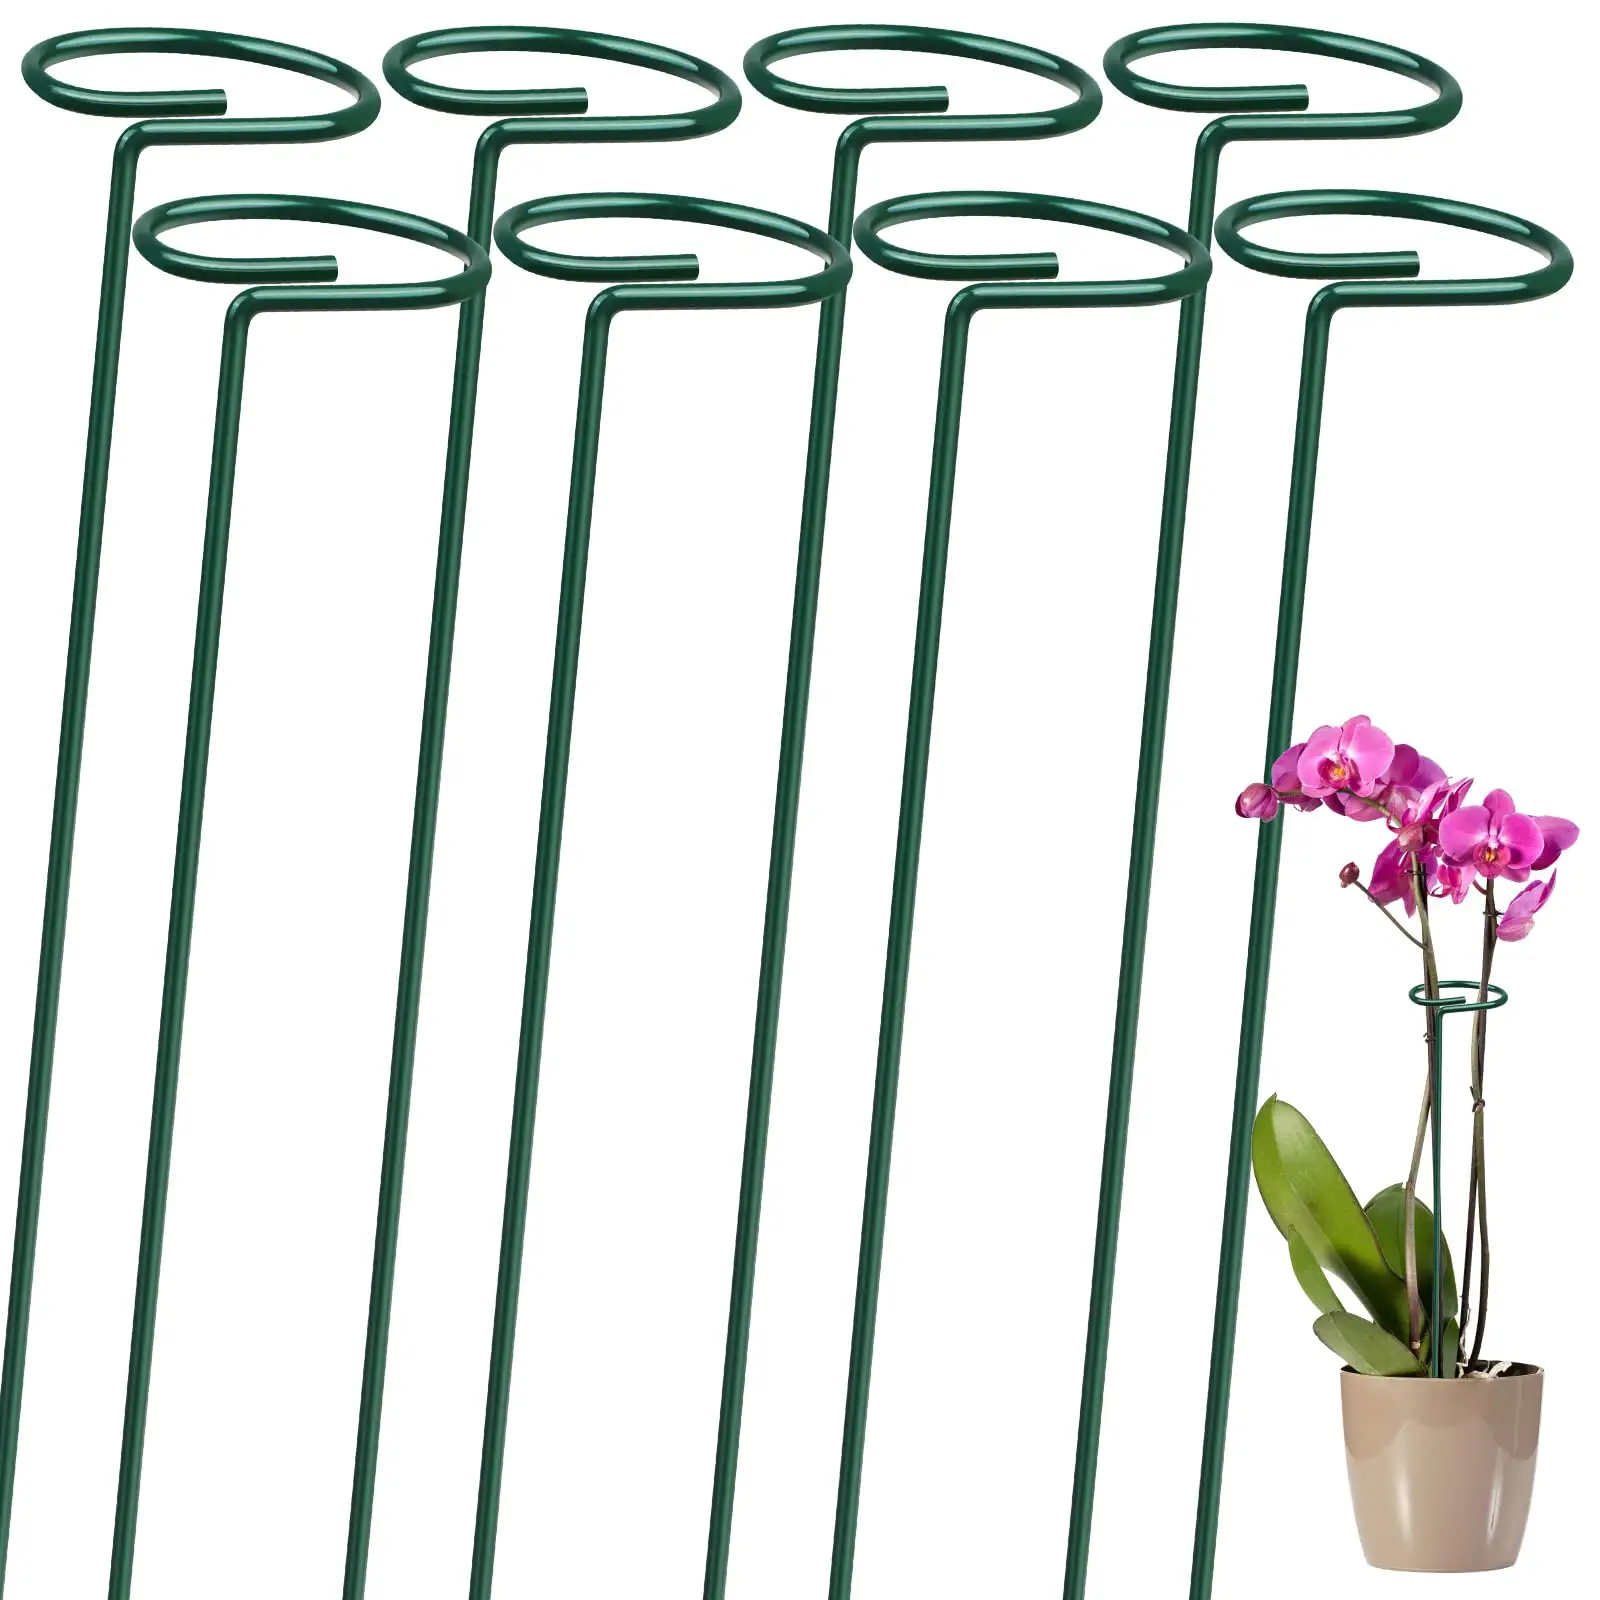 Pali di supporto per piante giardino stelo singolo gabbia per piante da fiore anello di supporto bastoncini per piante per Amaryllis orchidea peonia fiore di pomodoro